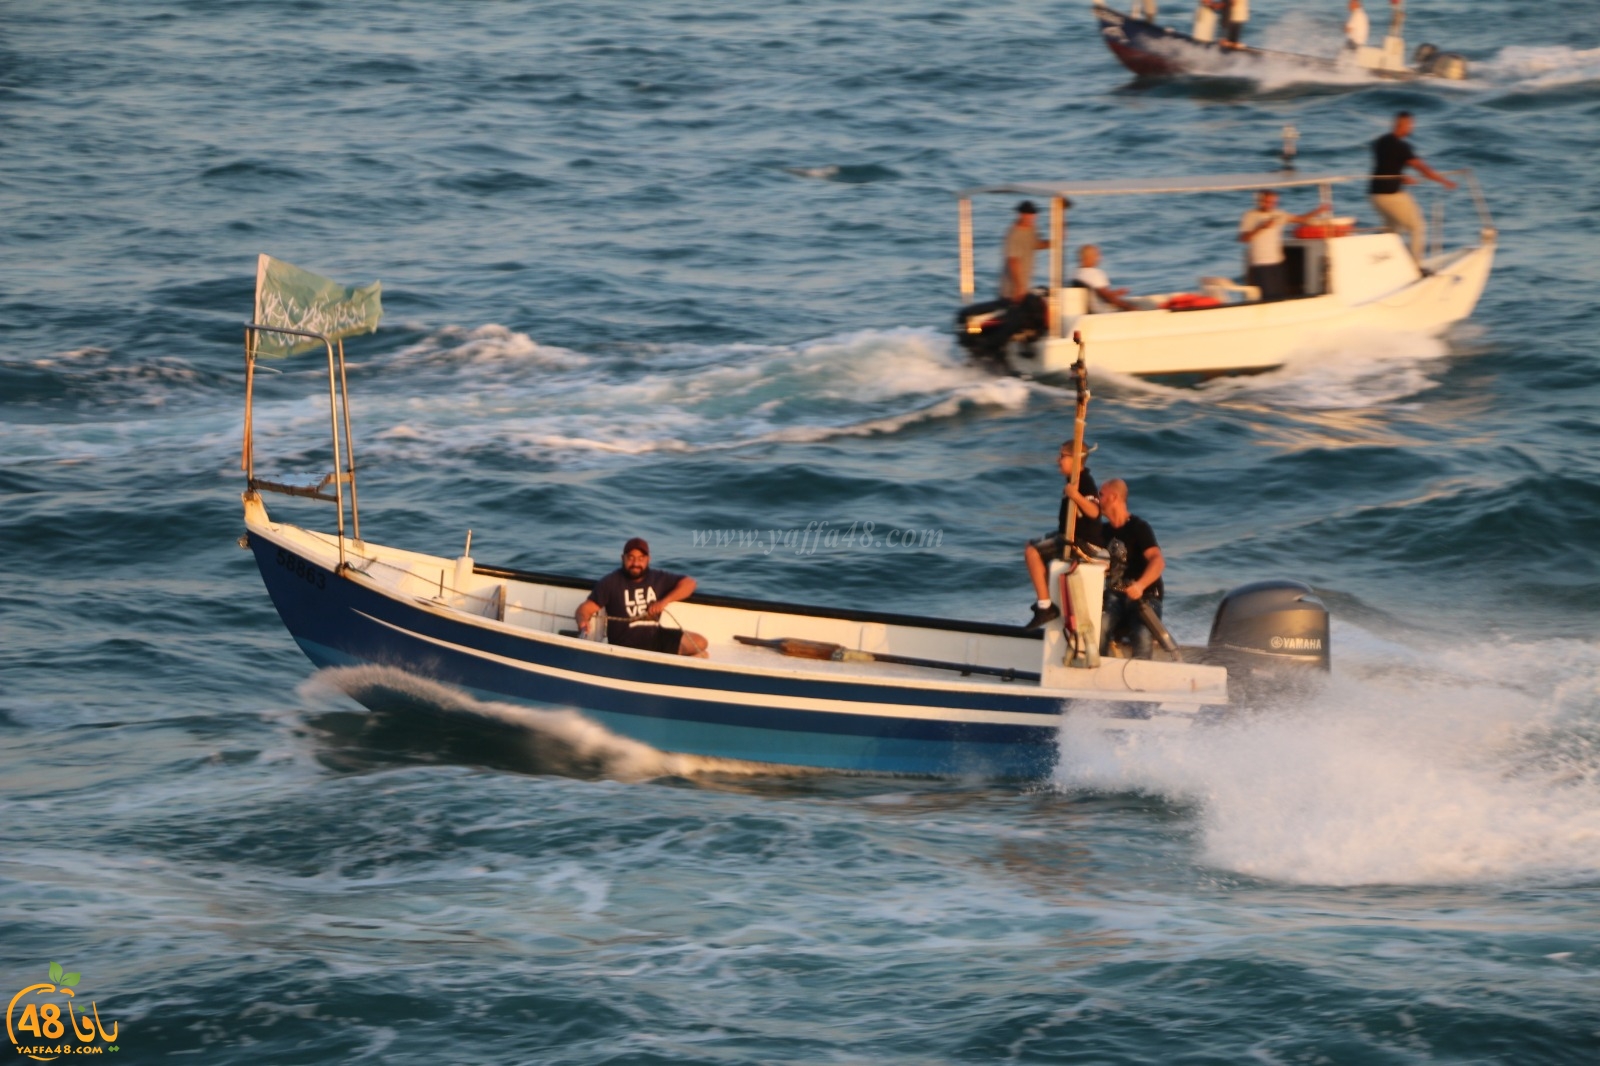 فيديو: كما جرت العادة في كل عام - صيادو يافا ينظمون استعراضاً بالقوارب خلال صلاة العيد 